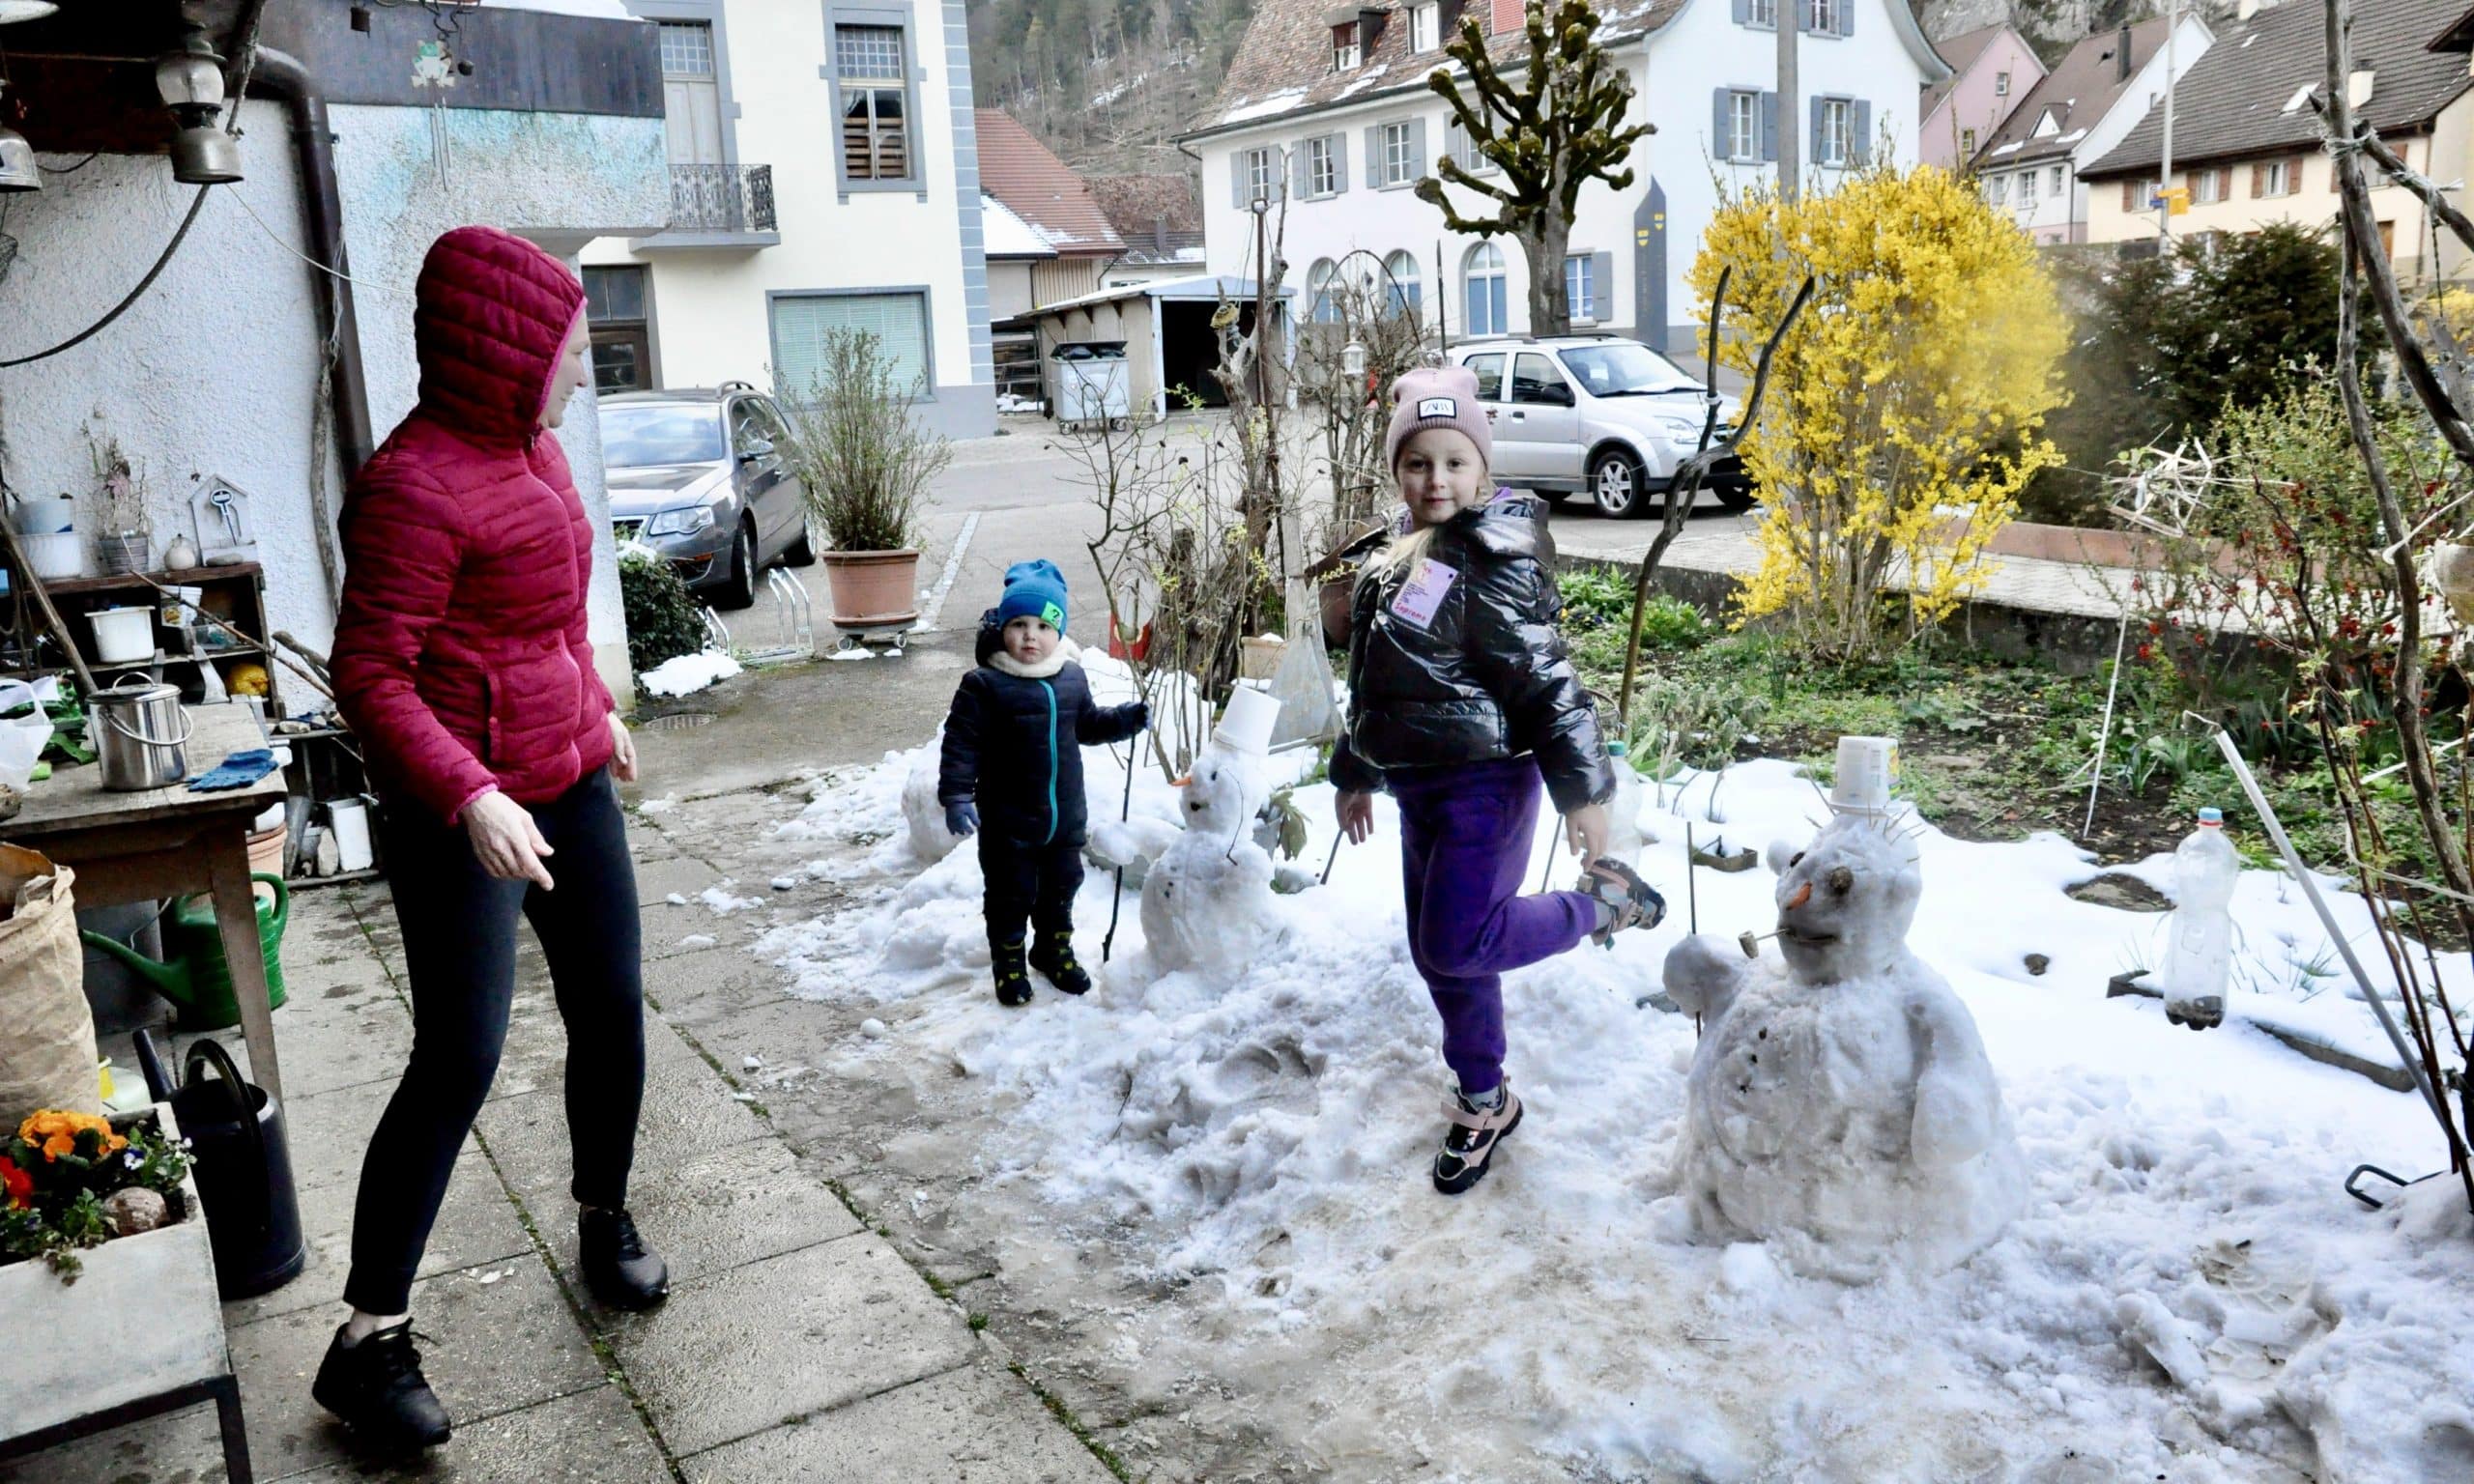 Лепим перед домом снеговиков с Анной, Мишей и Светланой. Кляйнлютцель, 4 апреля 2022 г. (© Jean-Pierre Weiss)